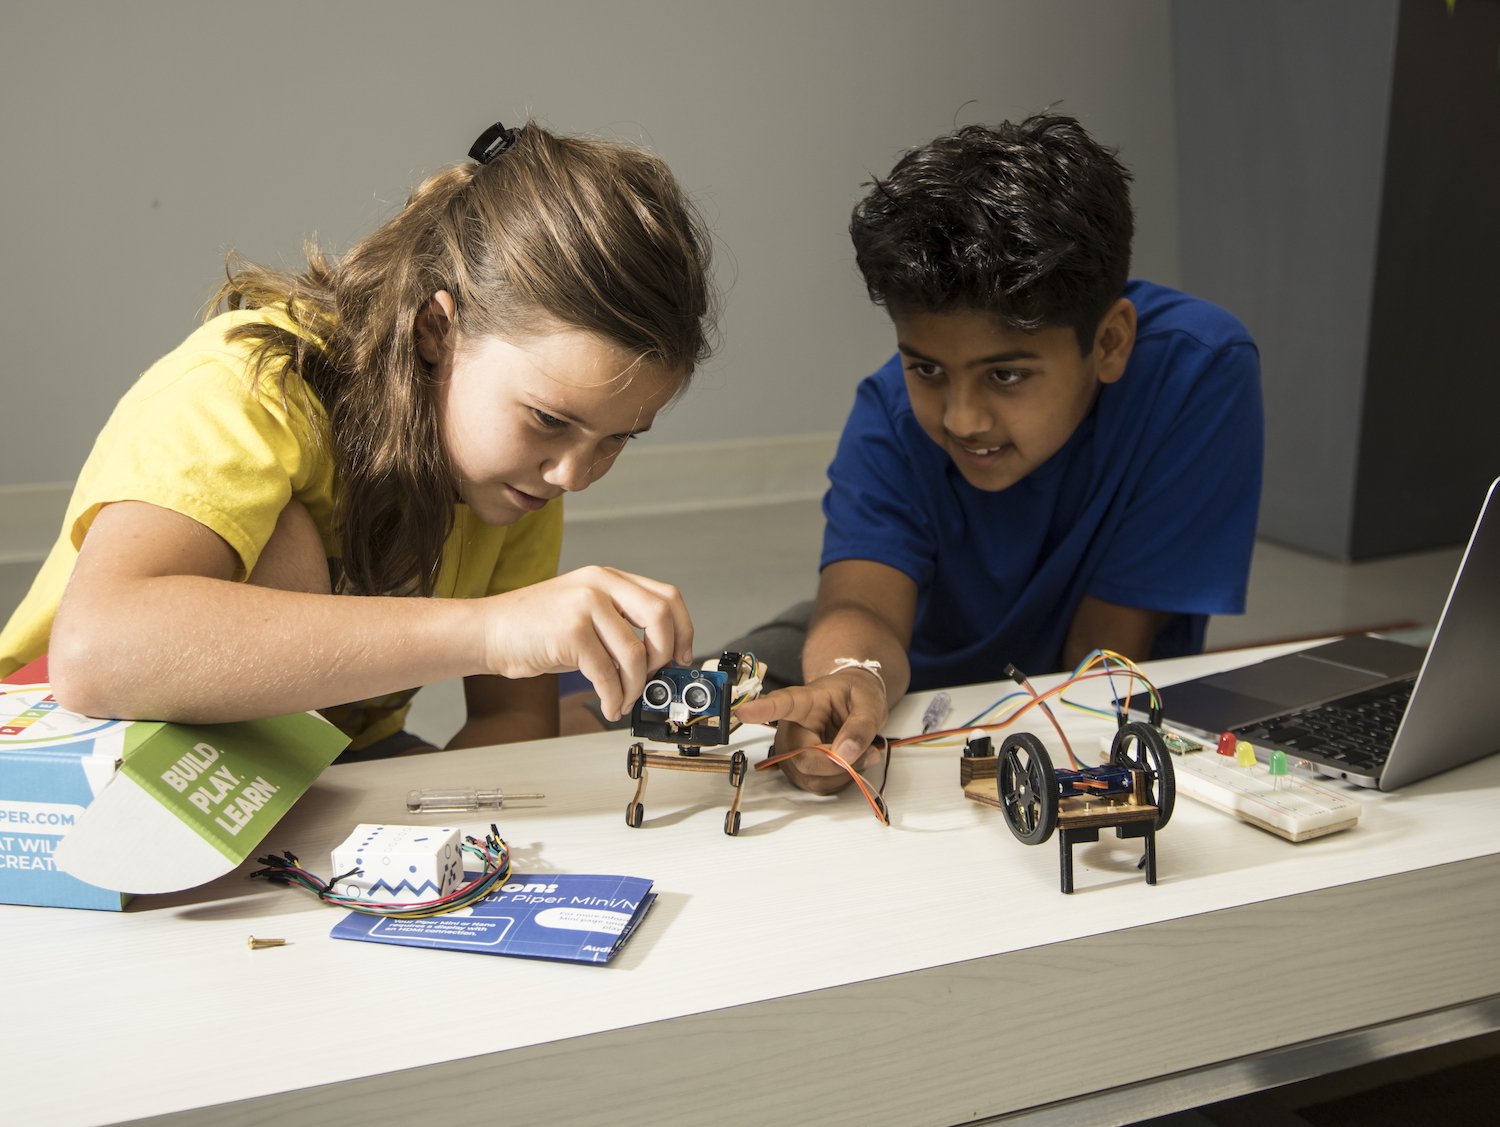 Se muestra el kit Piper's Robotics Expedition con niños trabajando en cómo programar los bots